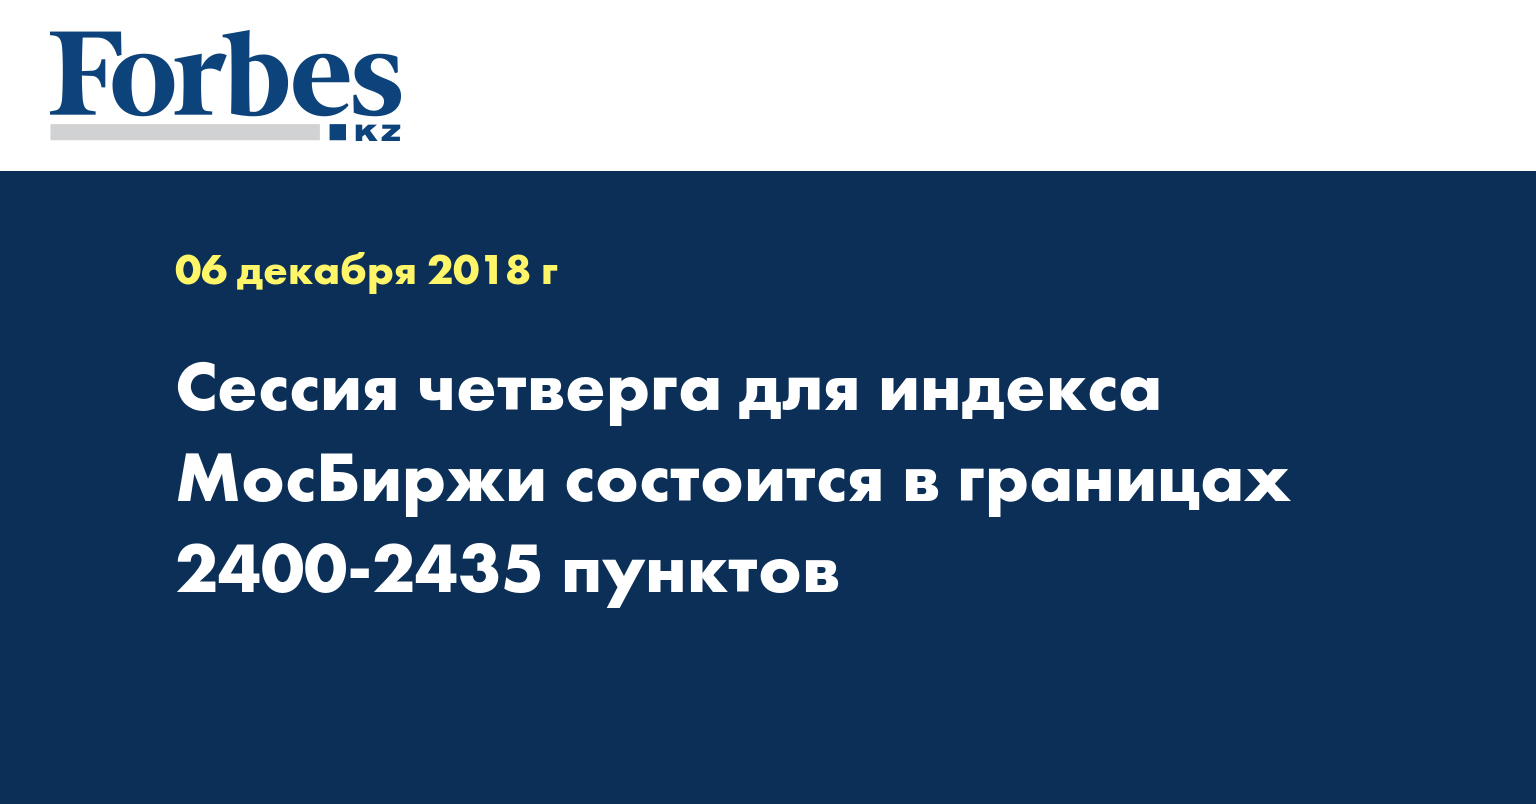 Сессия четверга для индекса МосБиржи состоится в границах 2400-2435 пунктов